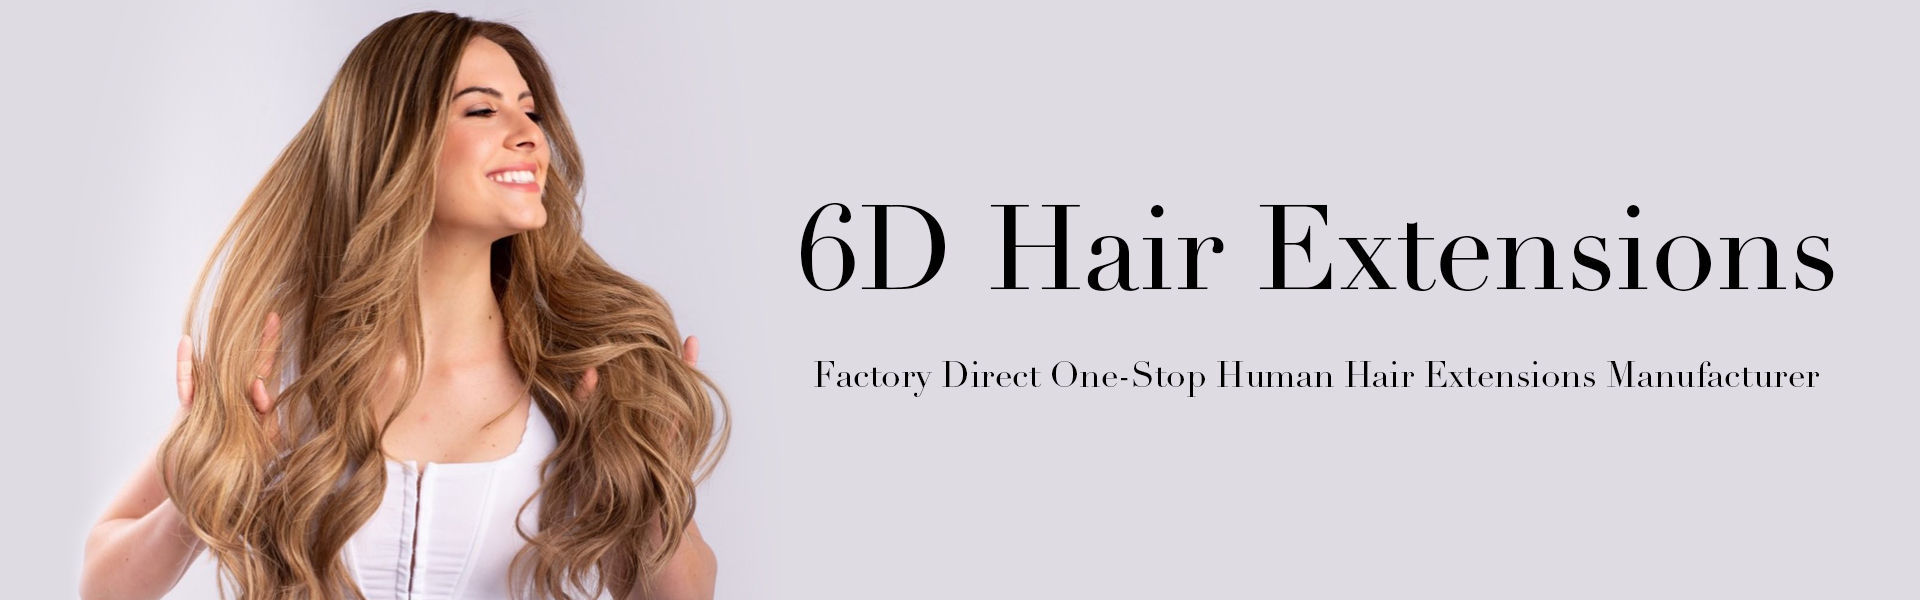 6D Hair Extensions Wholesale Manufacturer